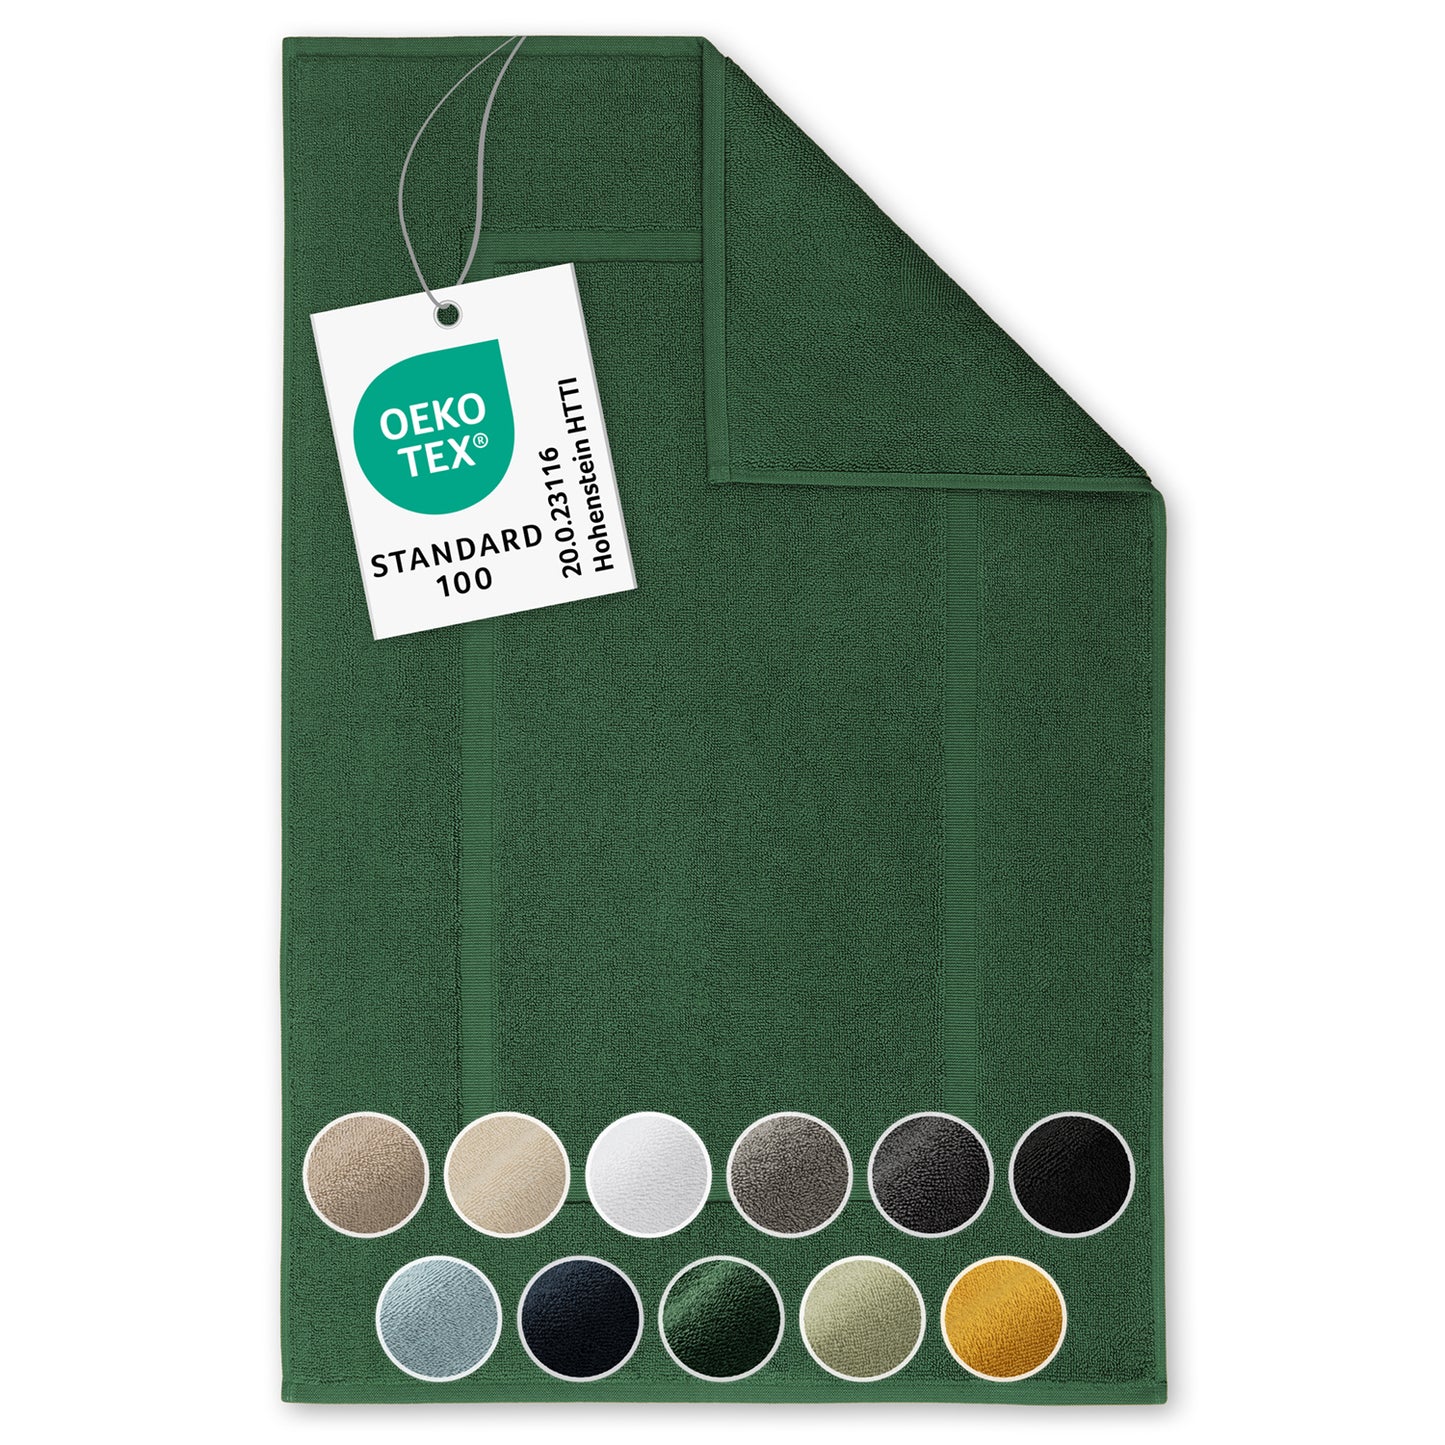 Gruenes Handtuch mit Farboptionen und OEKO-TEX Label.